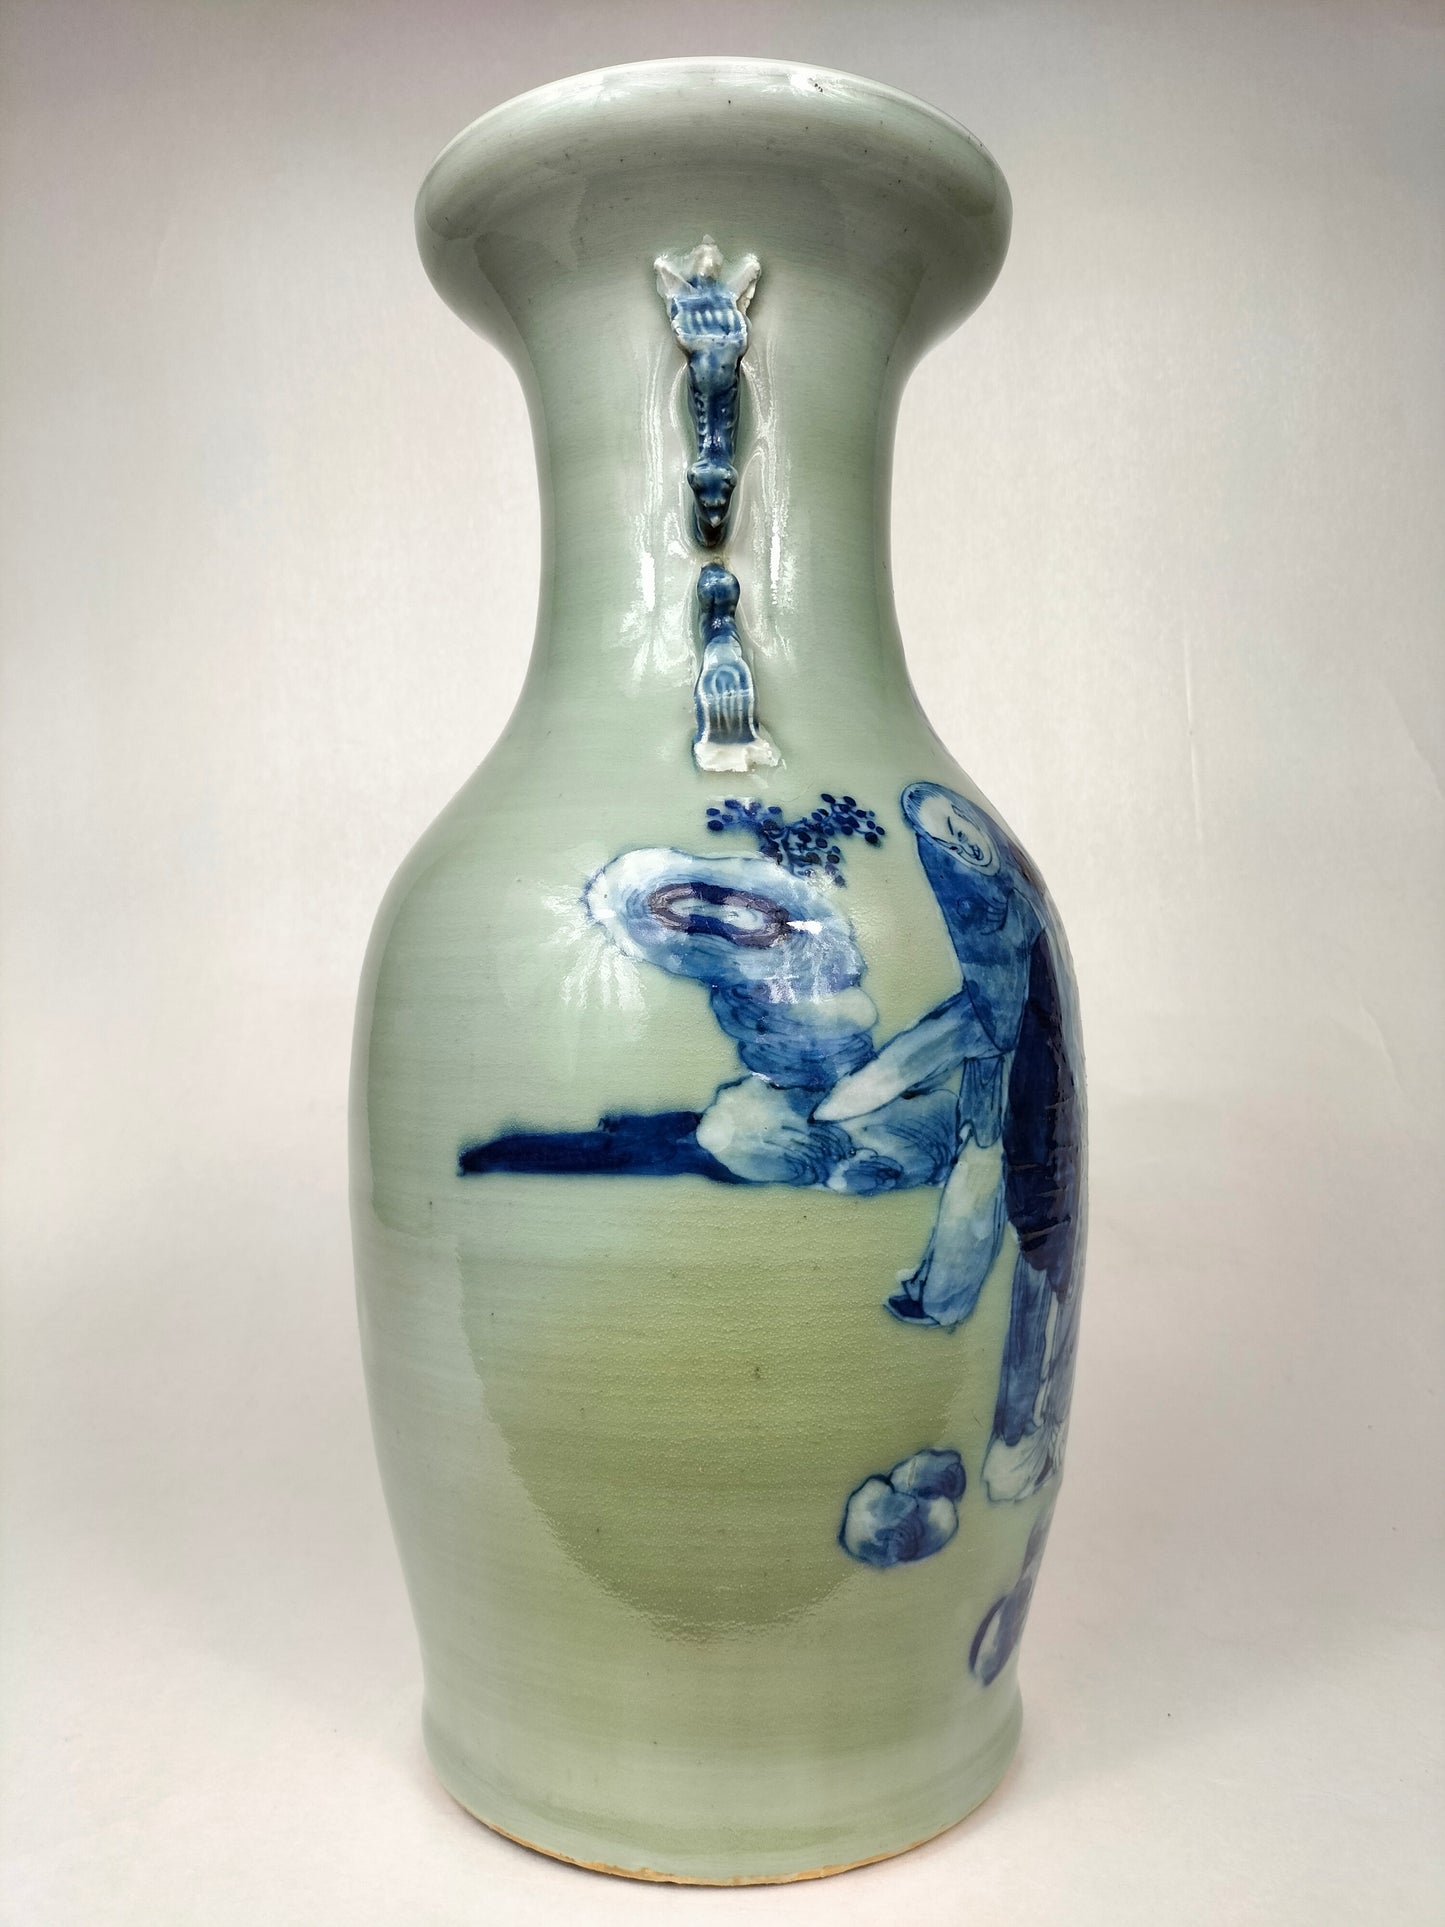 Antigo vaso caladon chinês decorado com sábios // Dinastia Qing - século XIX